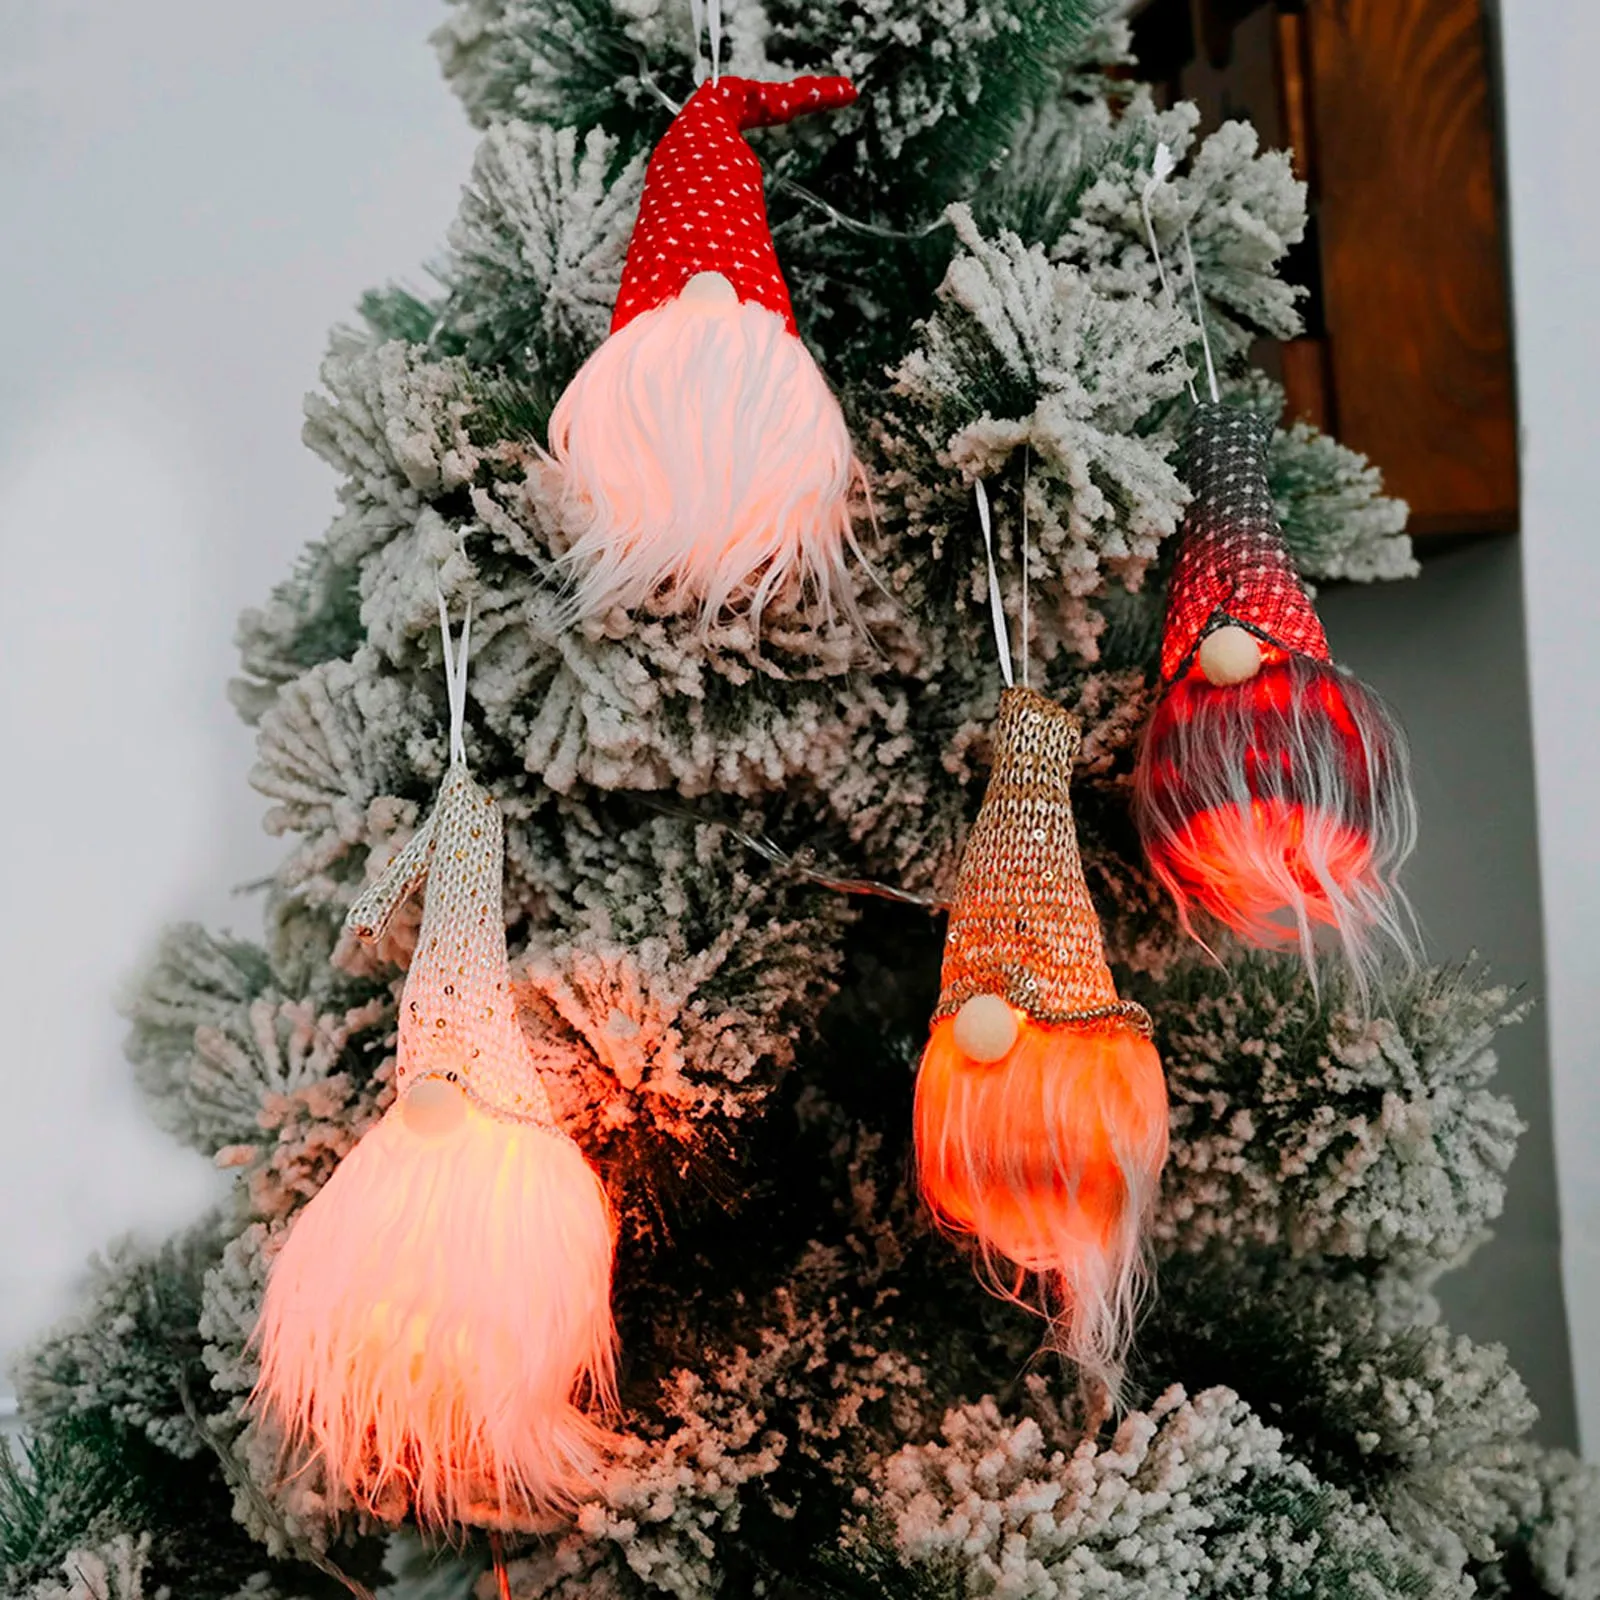 

Рождественские украшения с огнями, светящиеся безликие куклы Рудольфа для пожилых людей, карликовая гоблиновая кукла, рождественское праз...